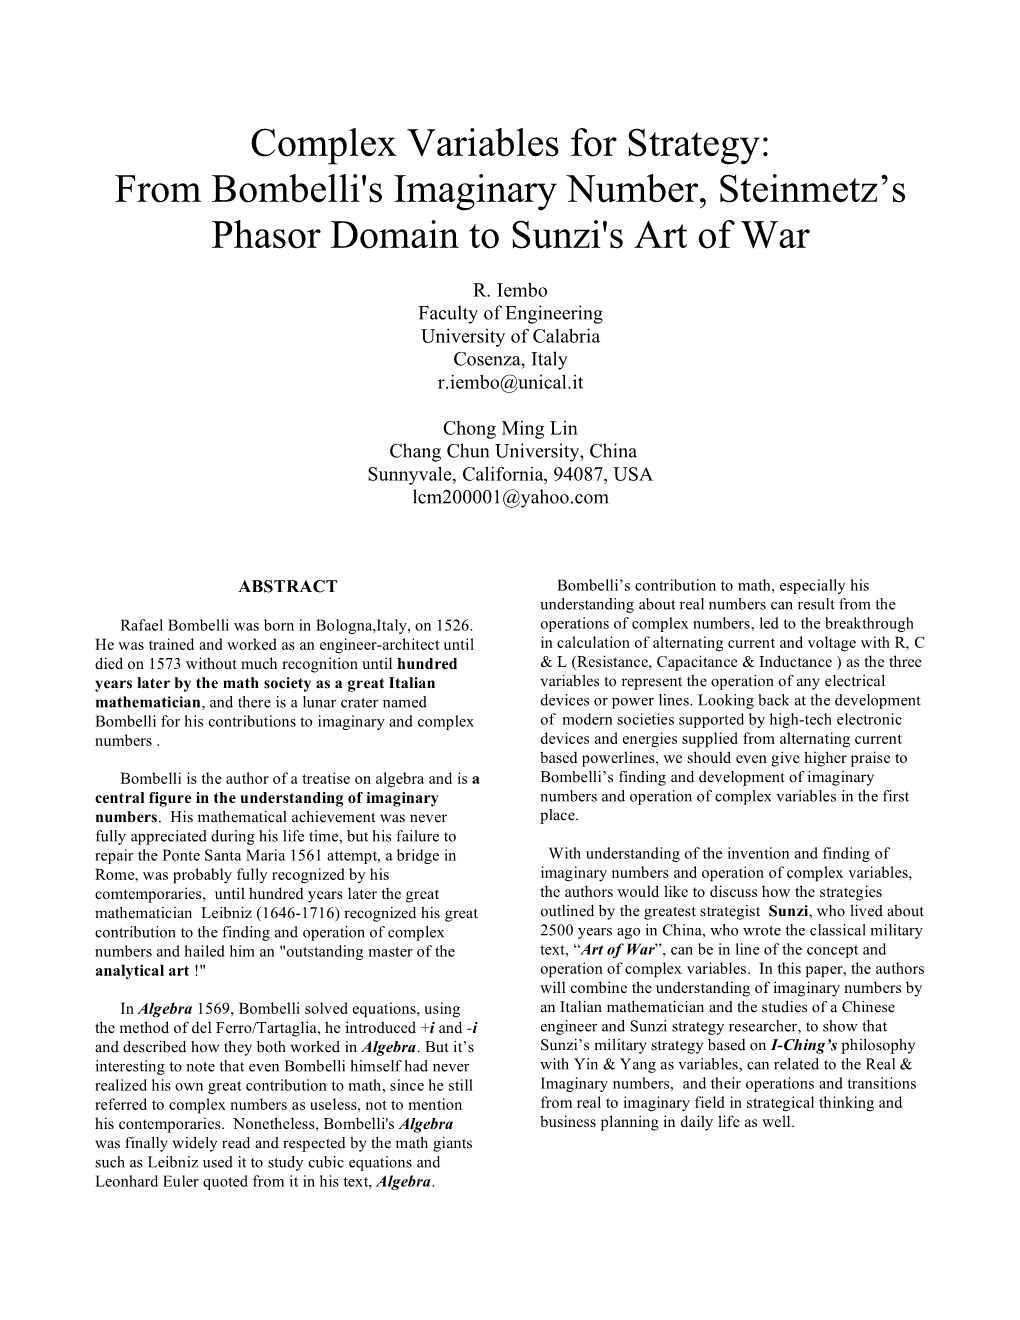 From Bombelli's Imaginary Number, Steinmetz's Phasor Domain To